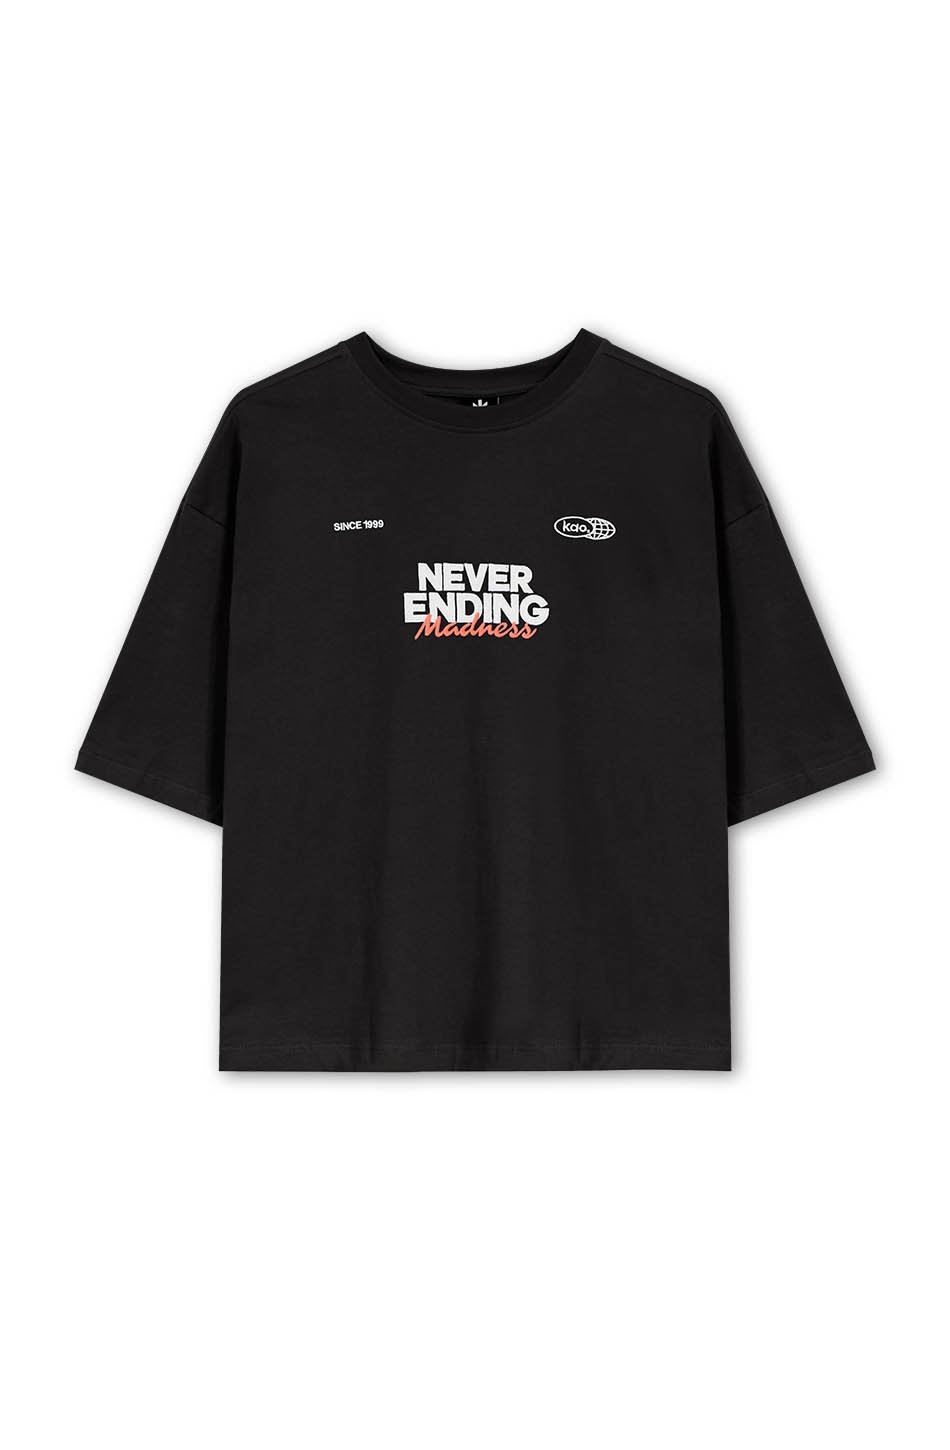 Camiseta Never Ending Black